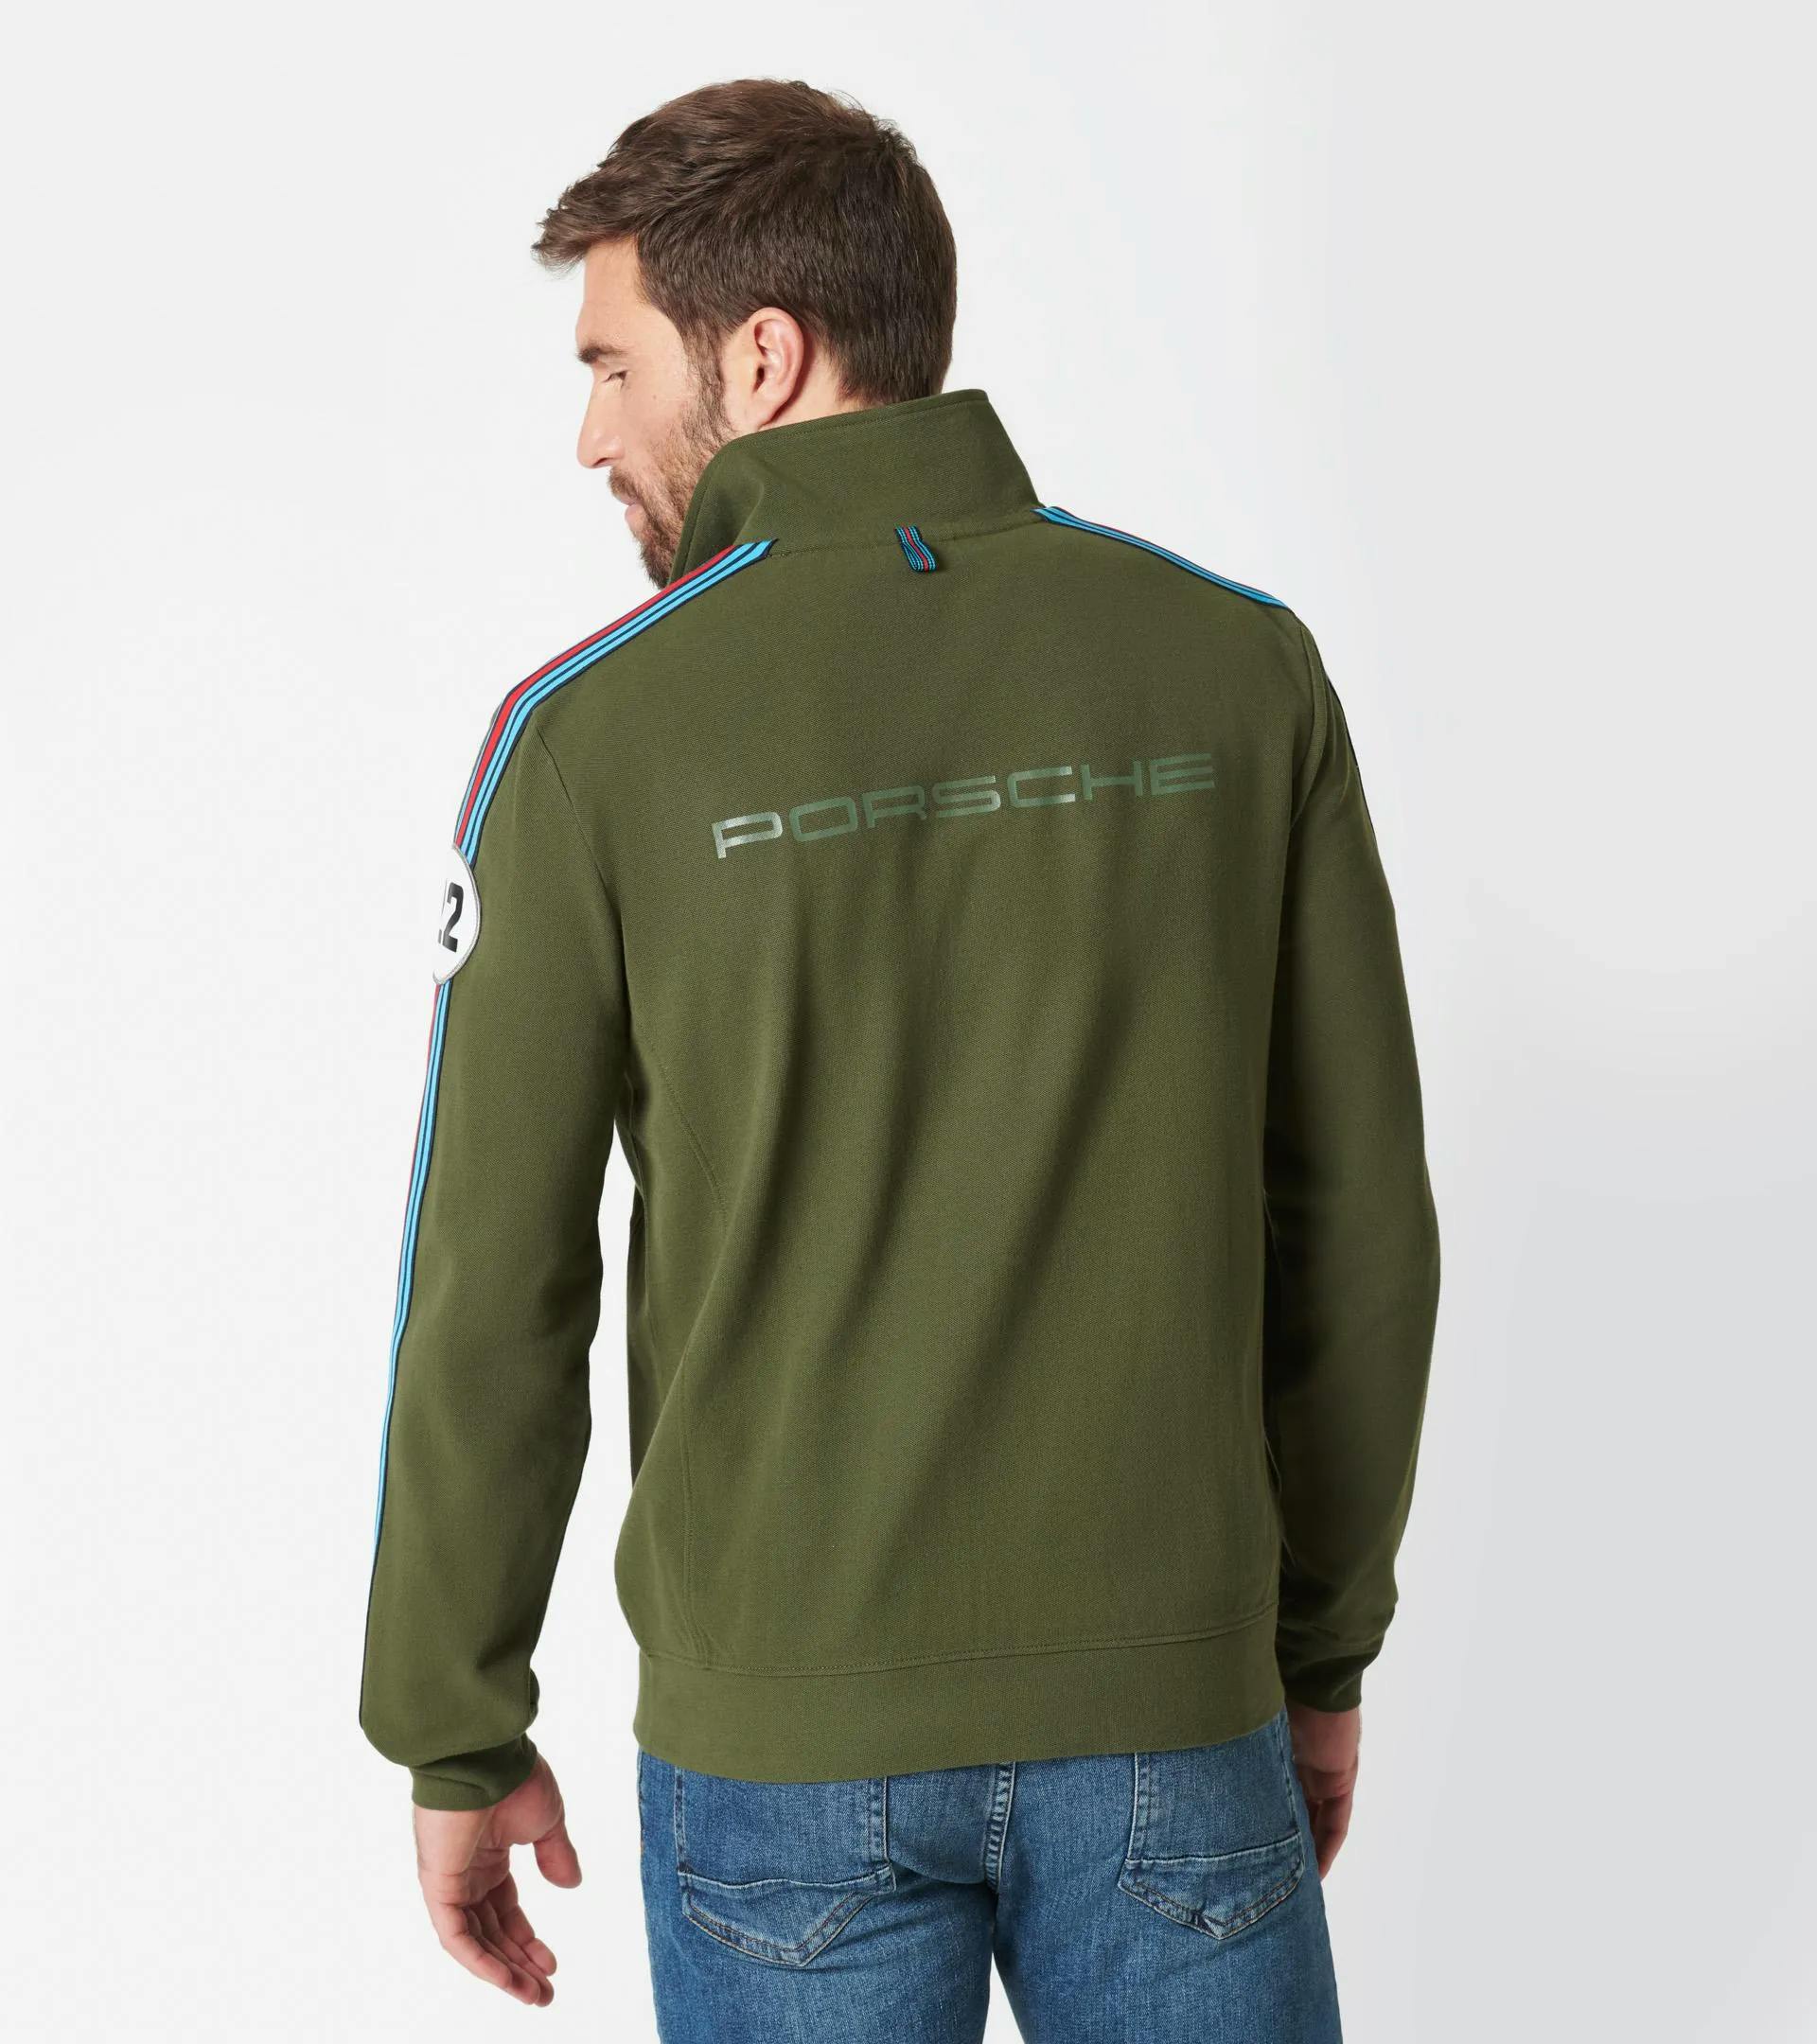 Zip-up sweatshirt jacket – MARTINI RACING® 4